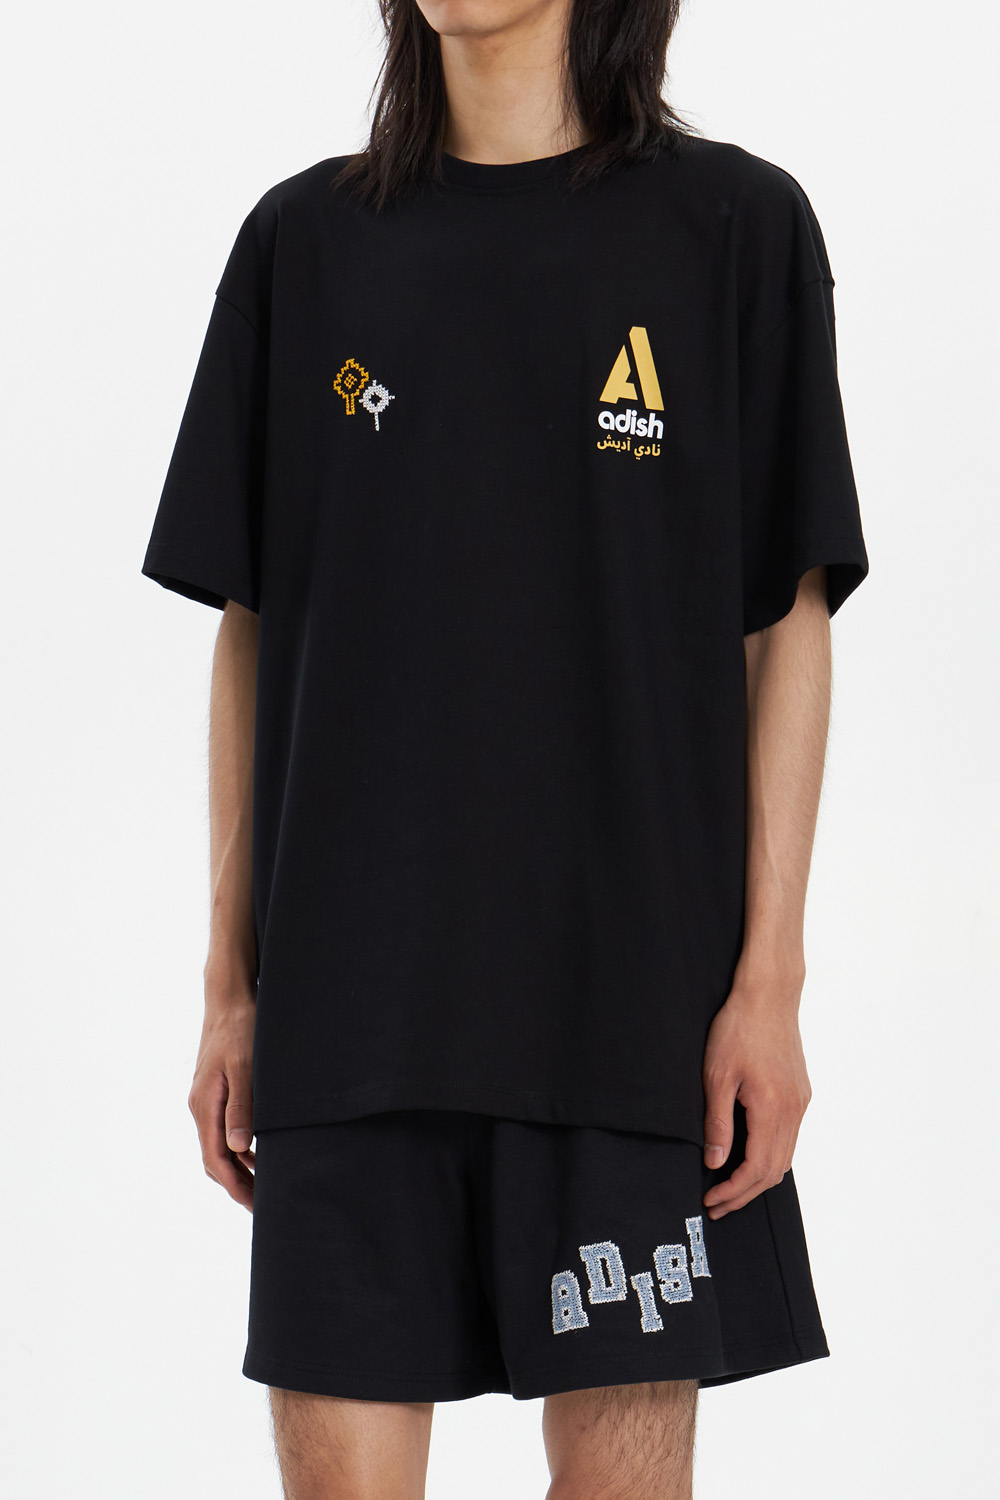 Adish Nadi Lel-Tennis Short Sleeve T-Shirt_Black